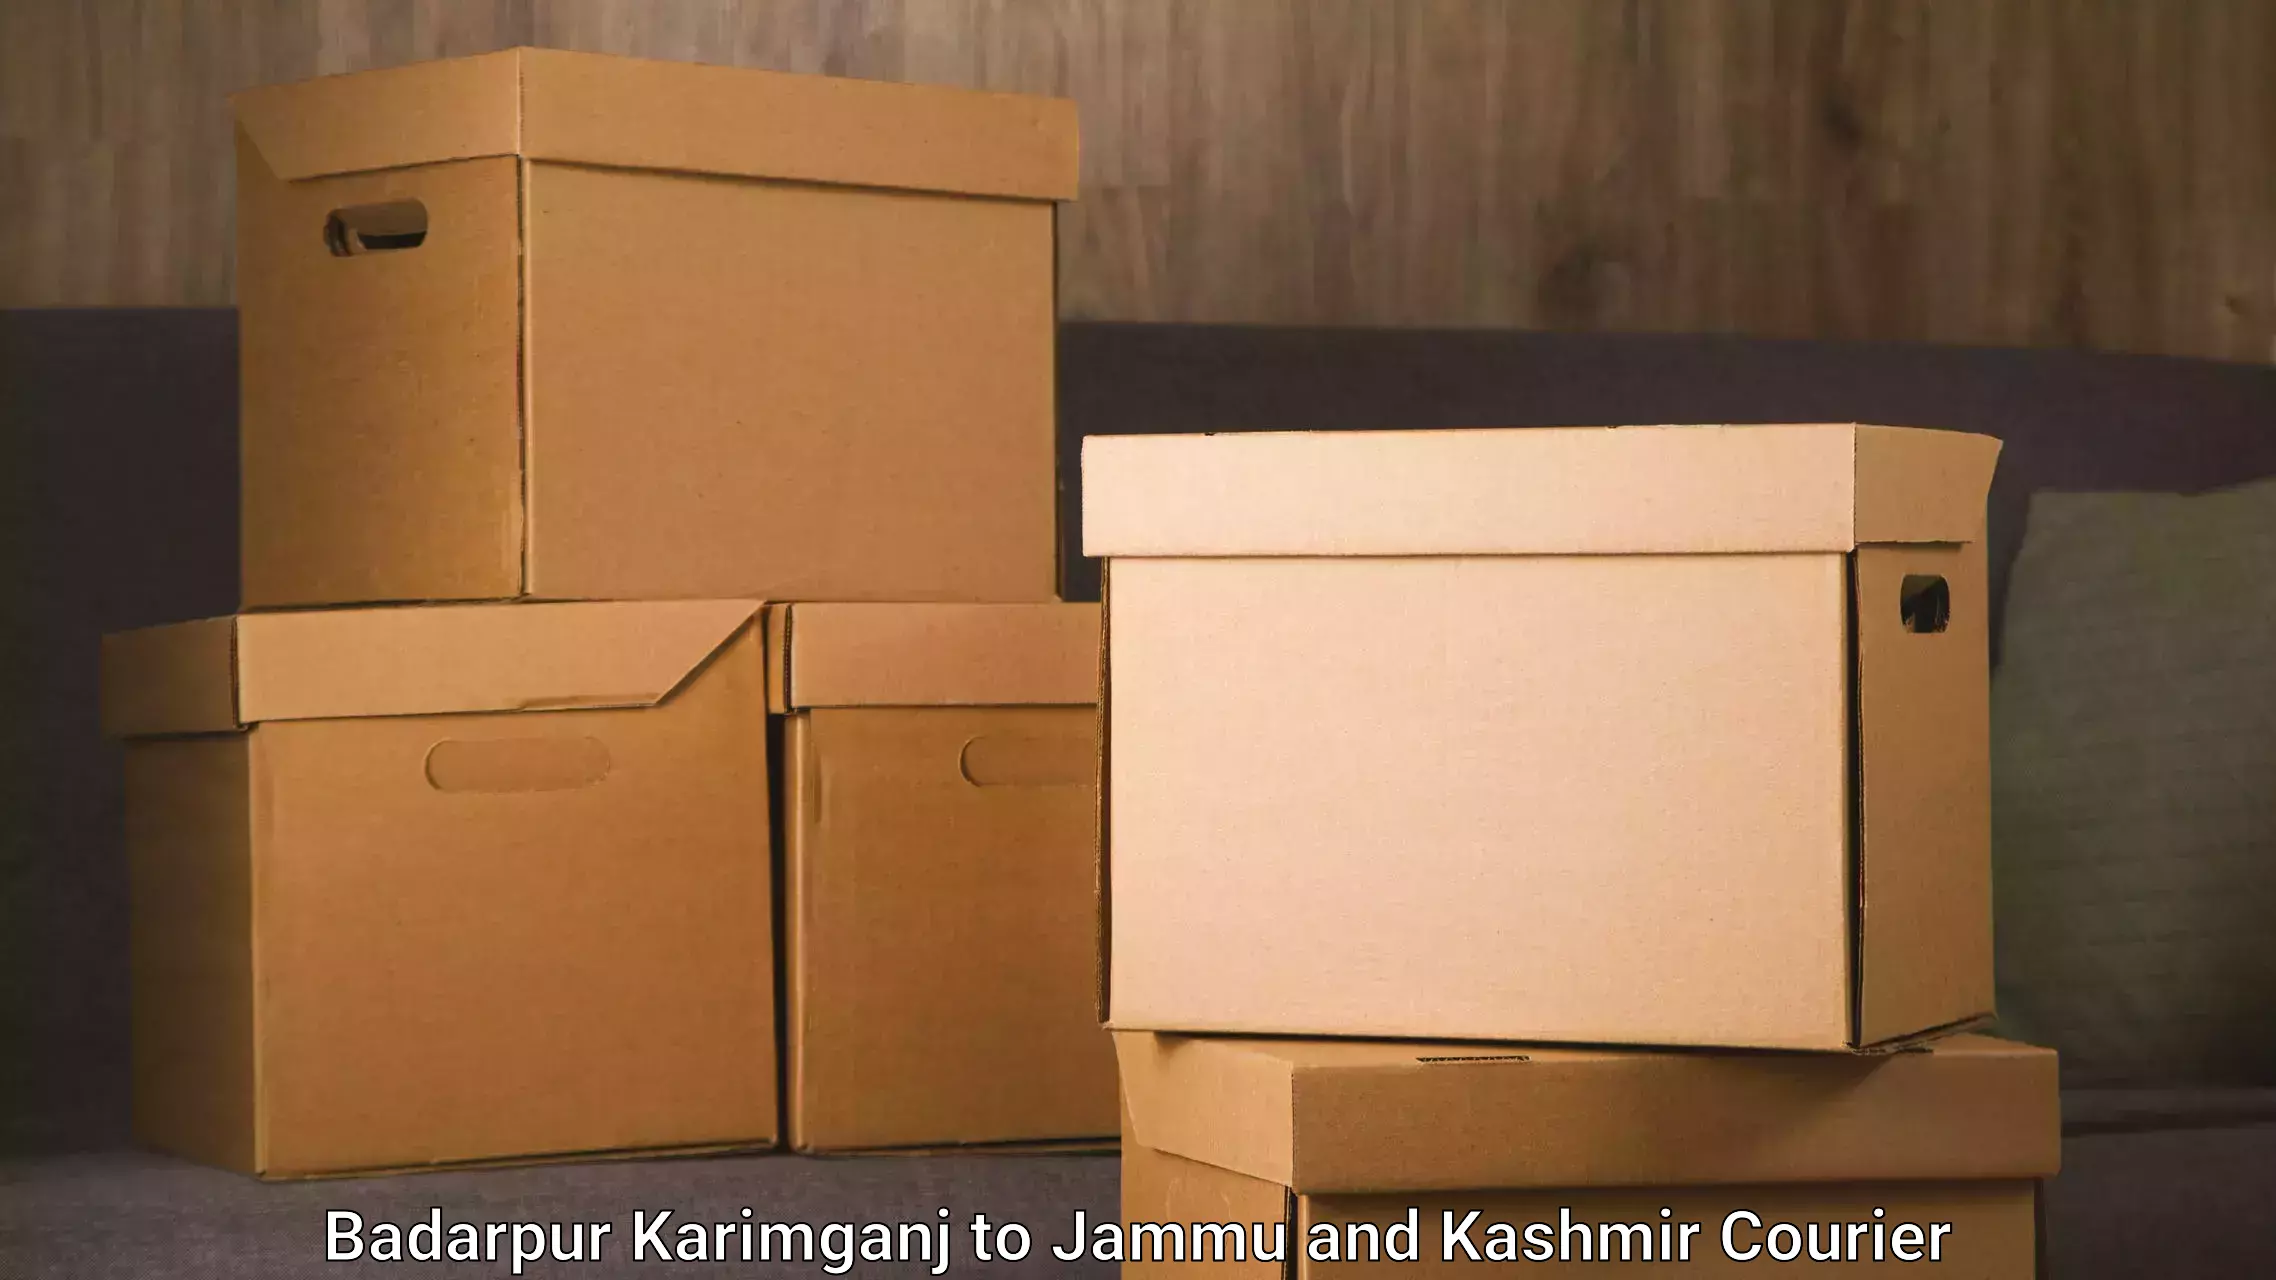 Package delivery network Badarpur Karimganj to Srinagar Kashmir